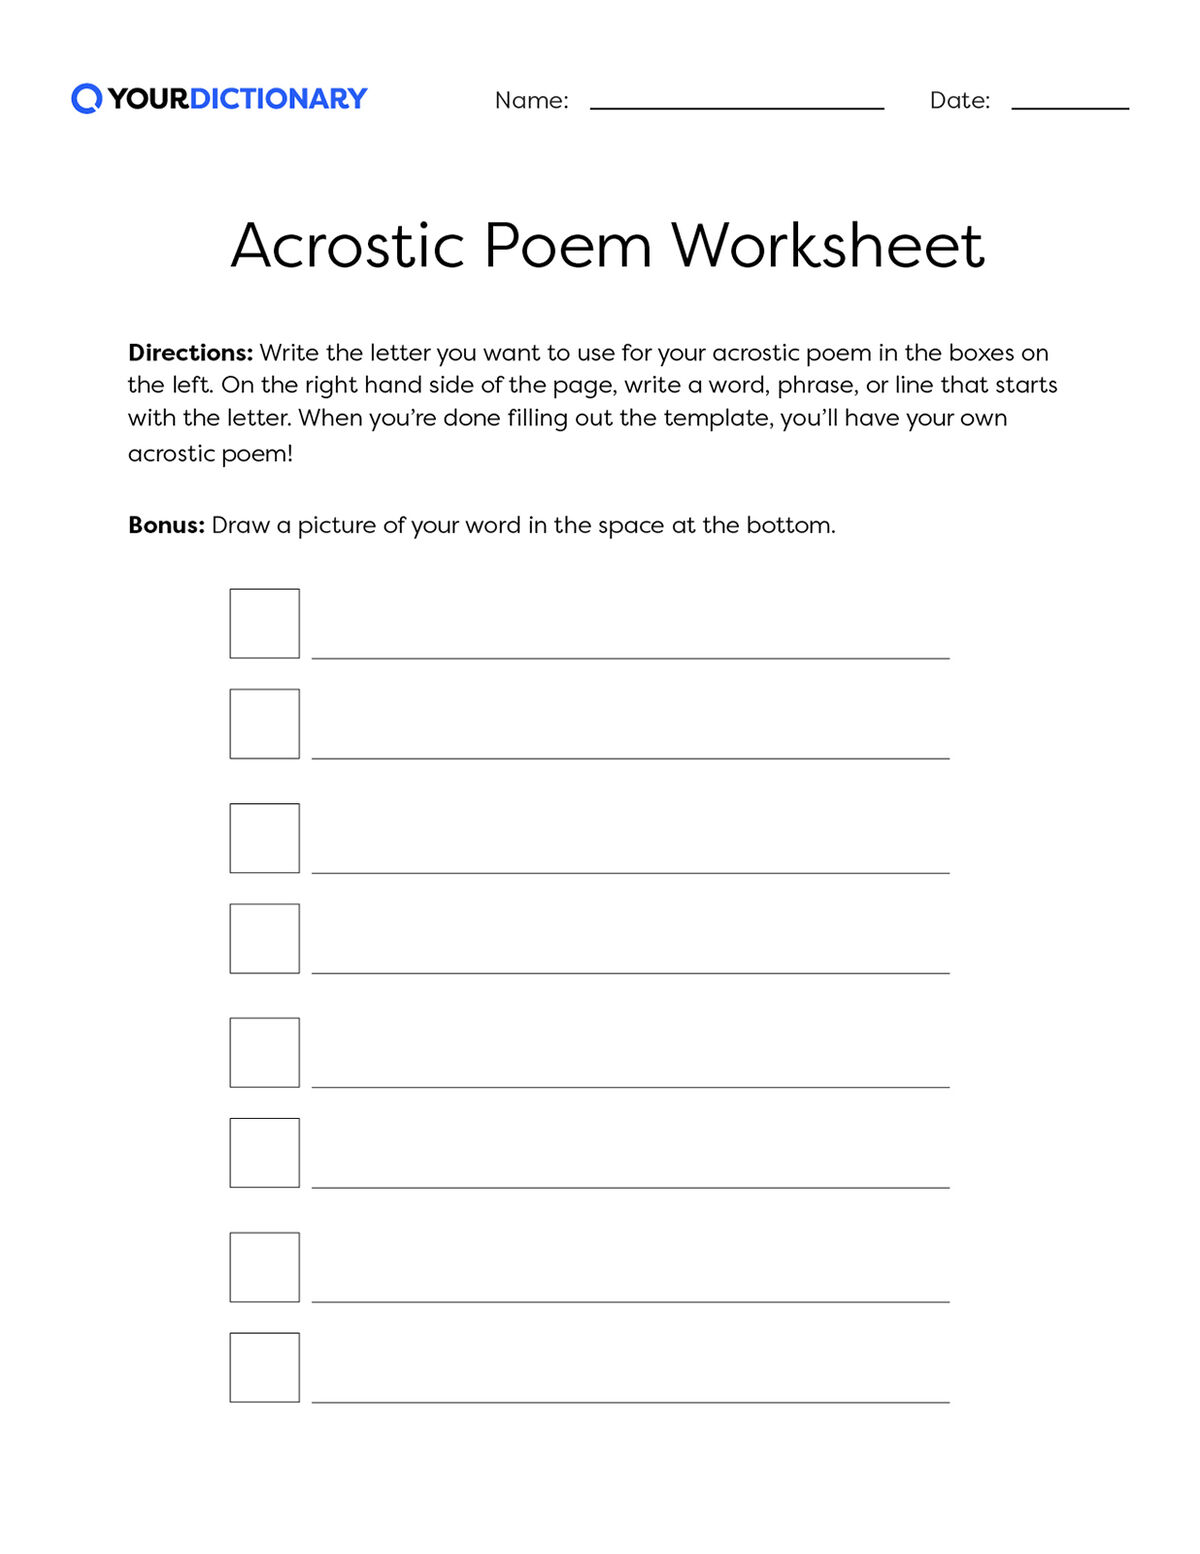 Acrostic Poem Worksheet